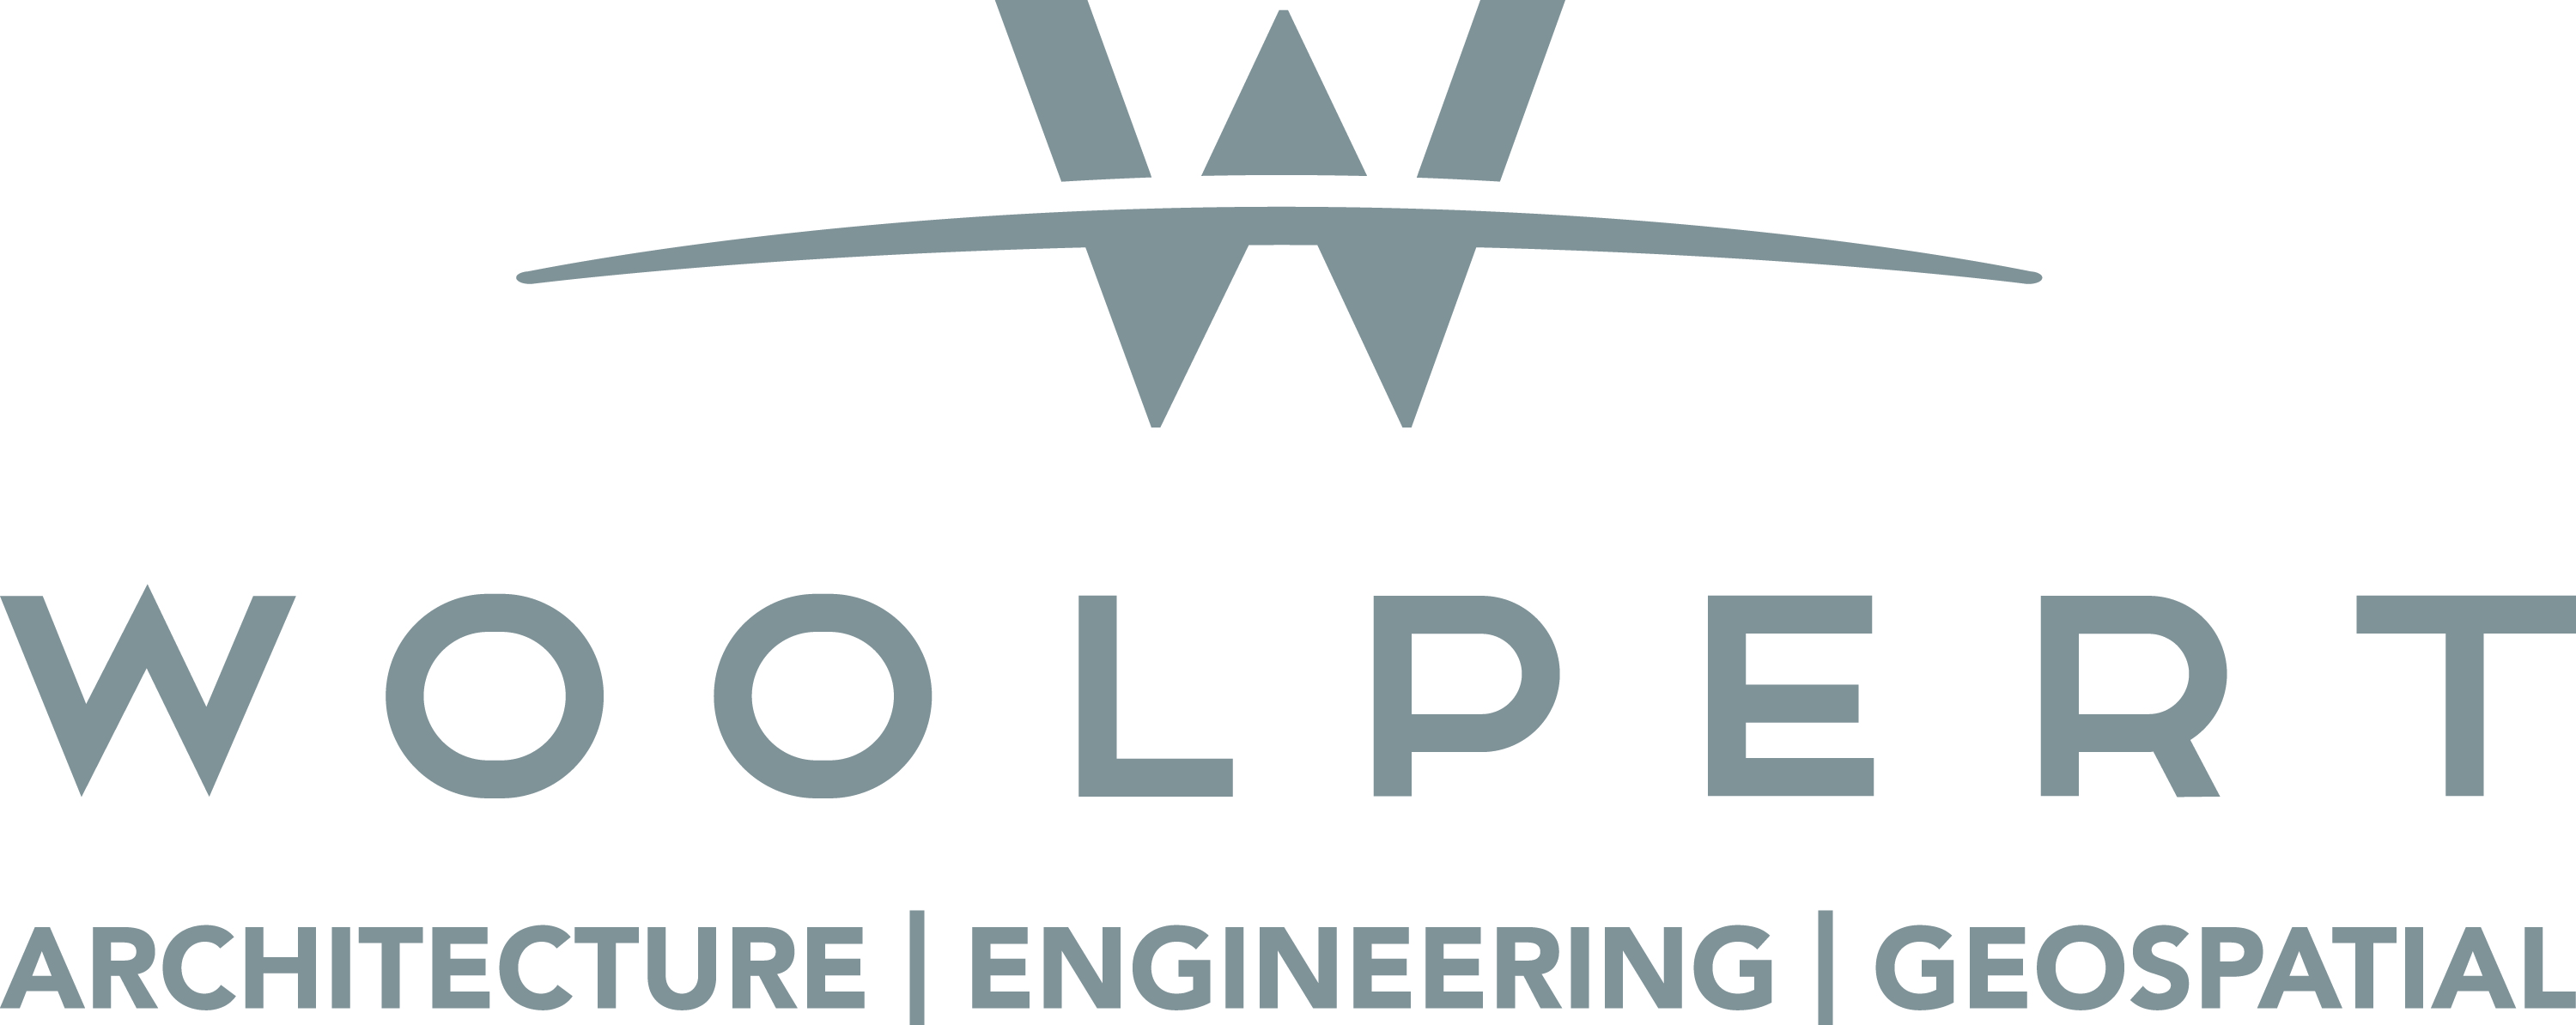 woolpert logo jpg.jpg